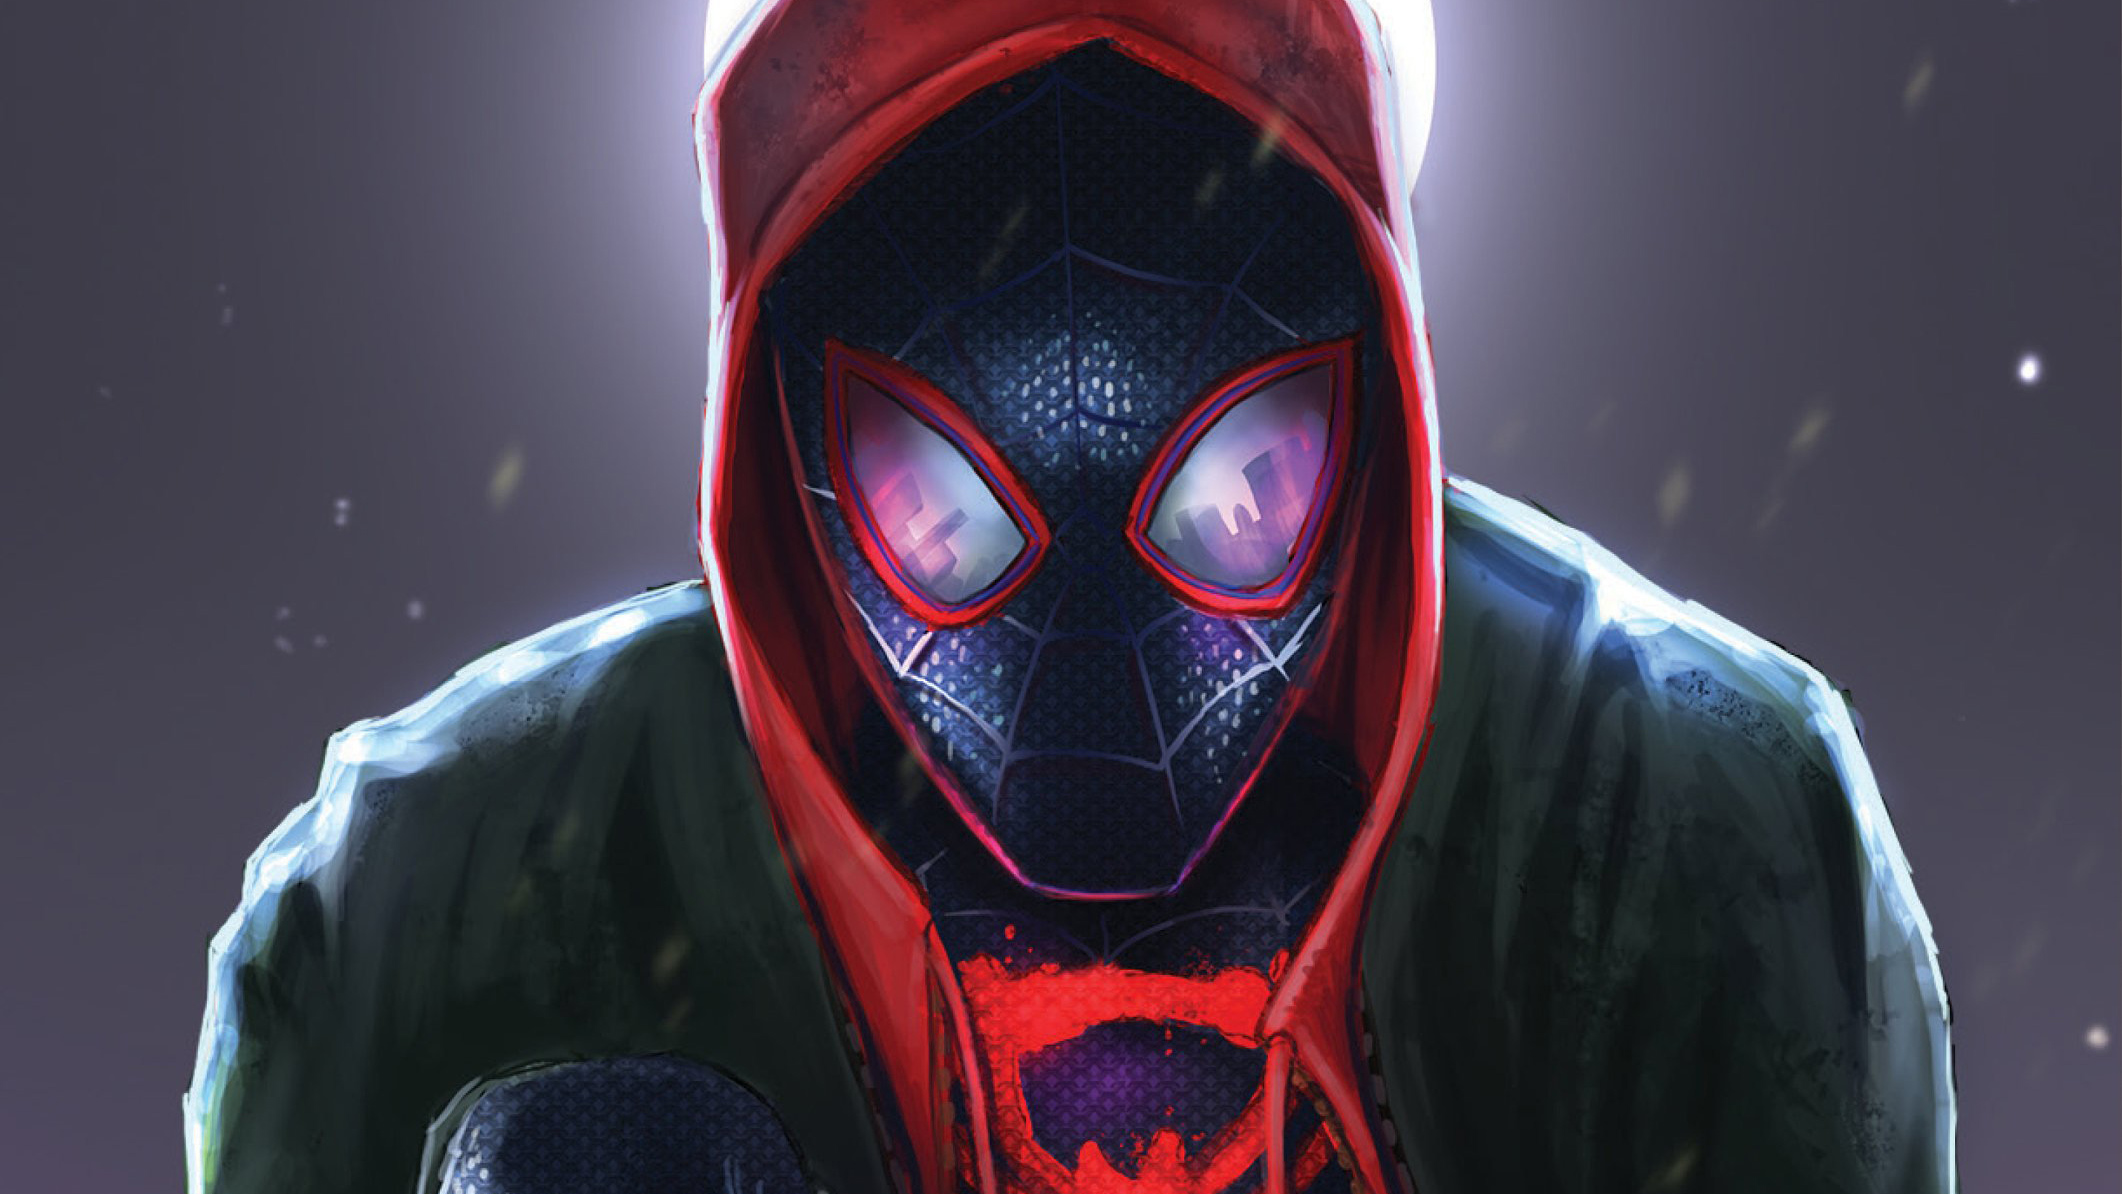 SpiderMan Into The Spider Verse Movie Art 2018, HD ...